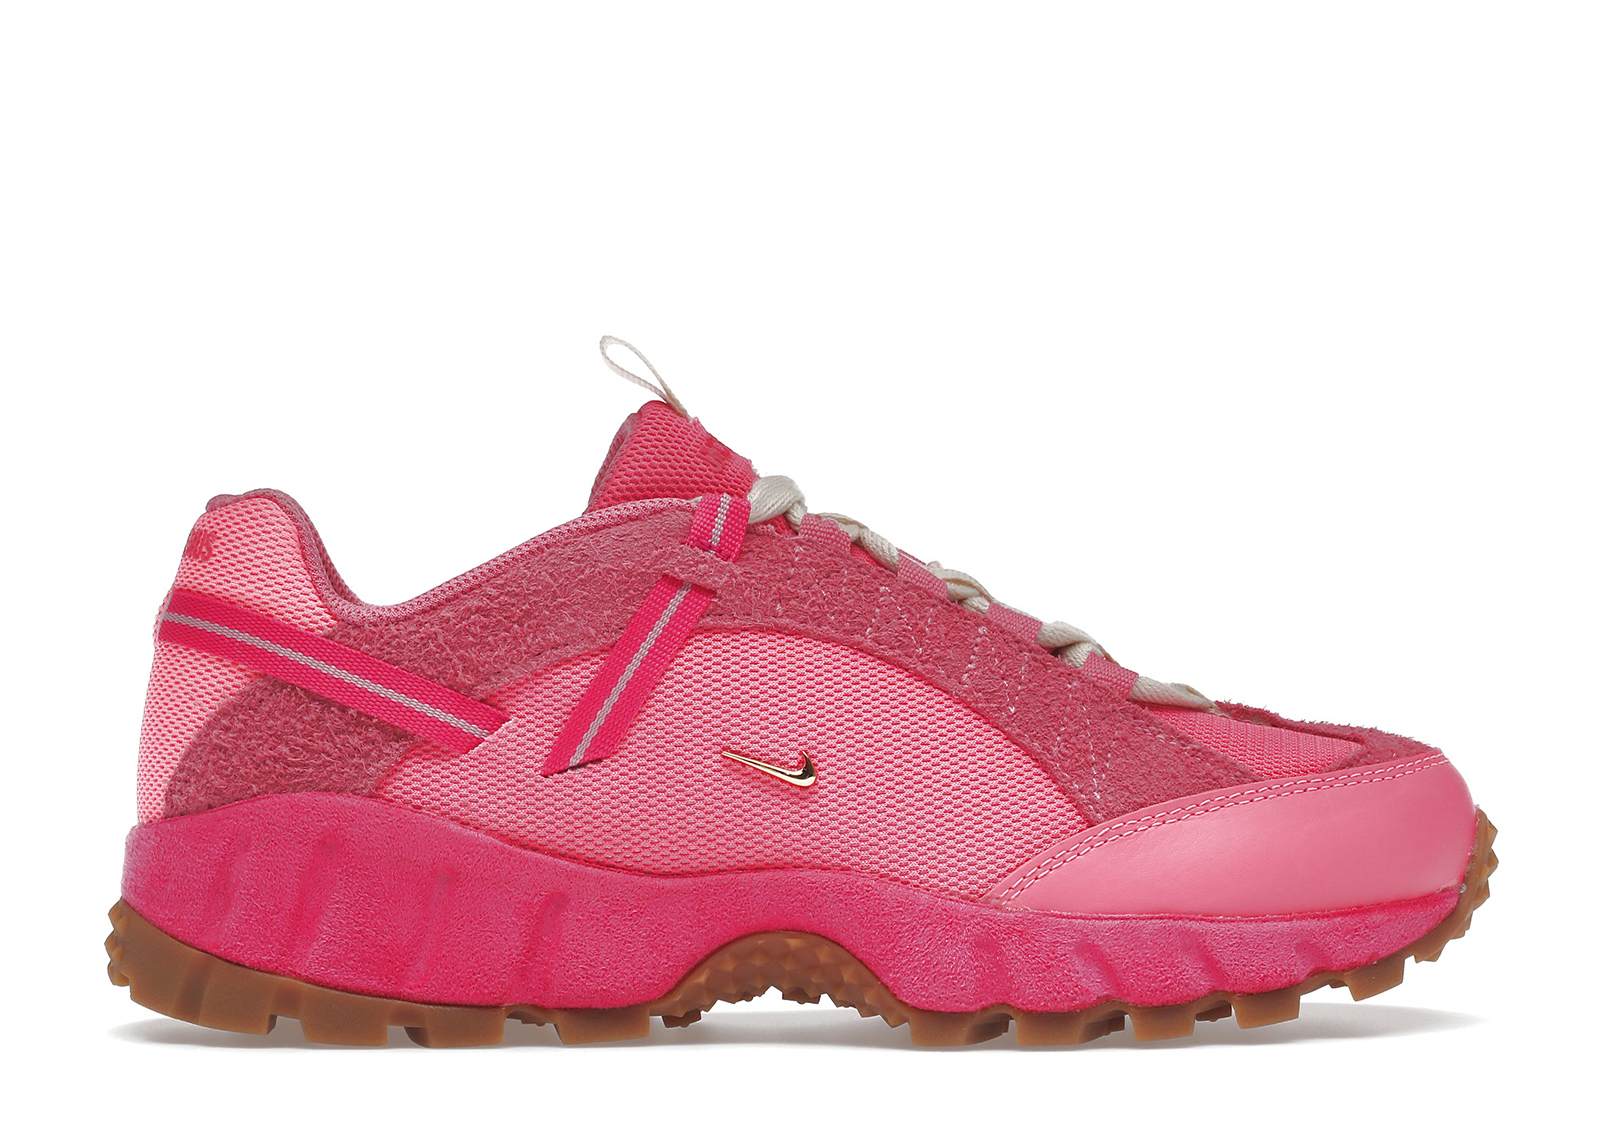 Nike Air Humara LX Jacquemus Pink Flash (Women's) - DX9999-600 - US